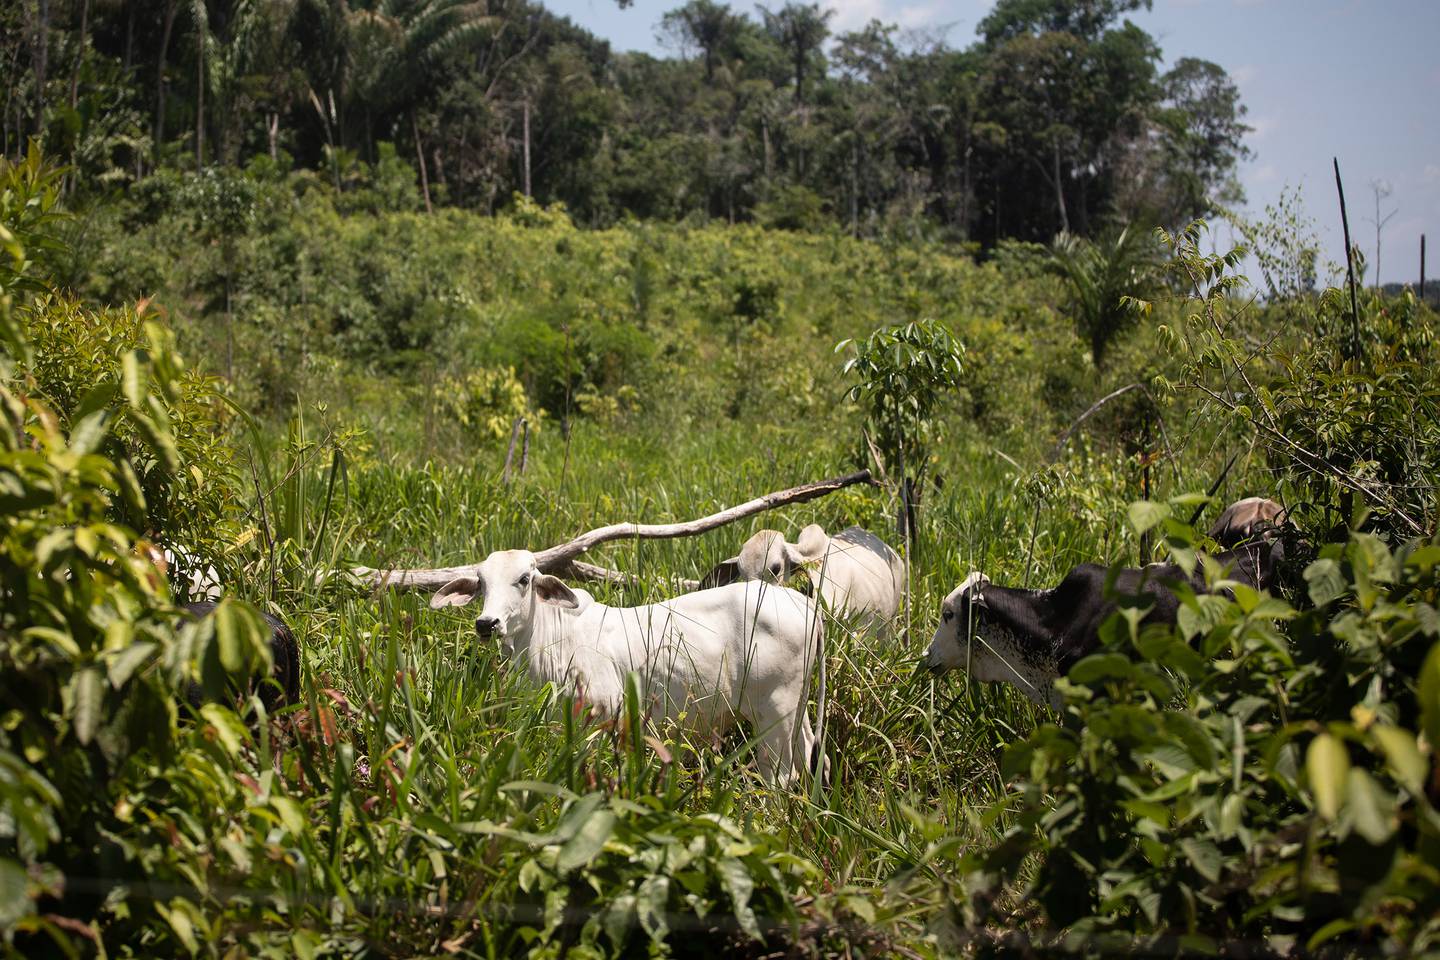 La cantidad de ganado en ocho zonas clave donde la Amazonía está sufriendo altos niveles de deforestación casi se duplicó a 2,1 millones el año pasado desde 2016.Fotógrafo: Ivan Valencia / Bloombergdfd